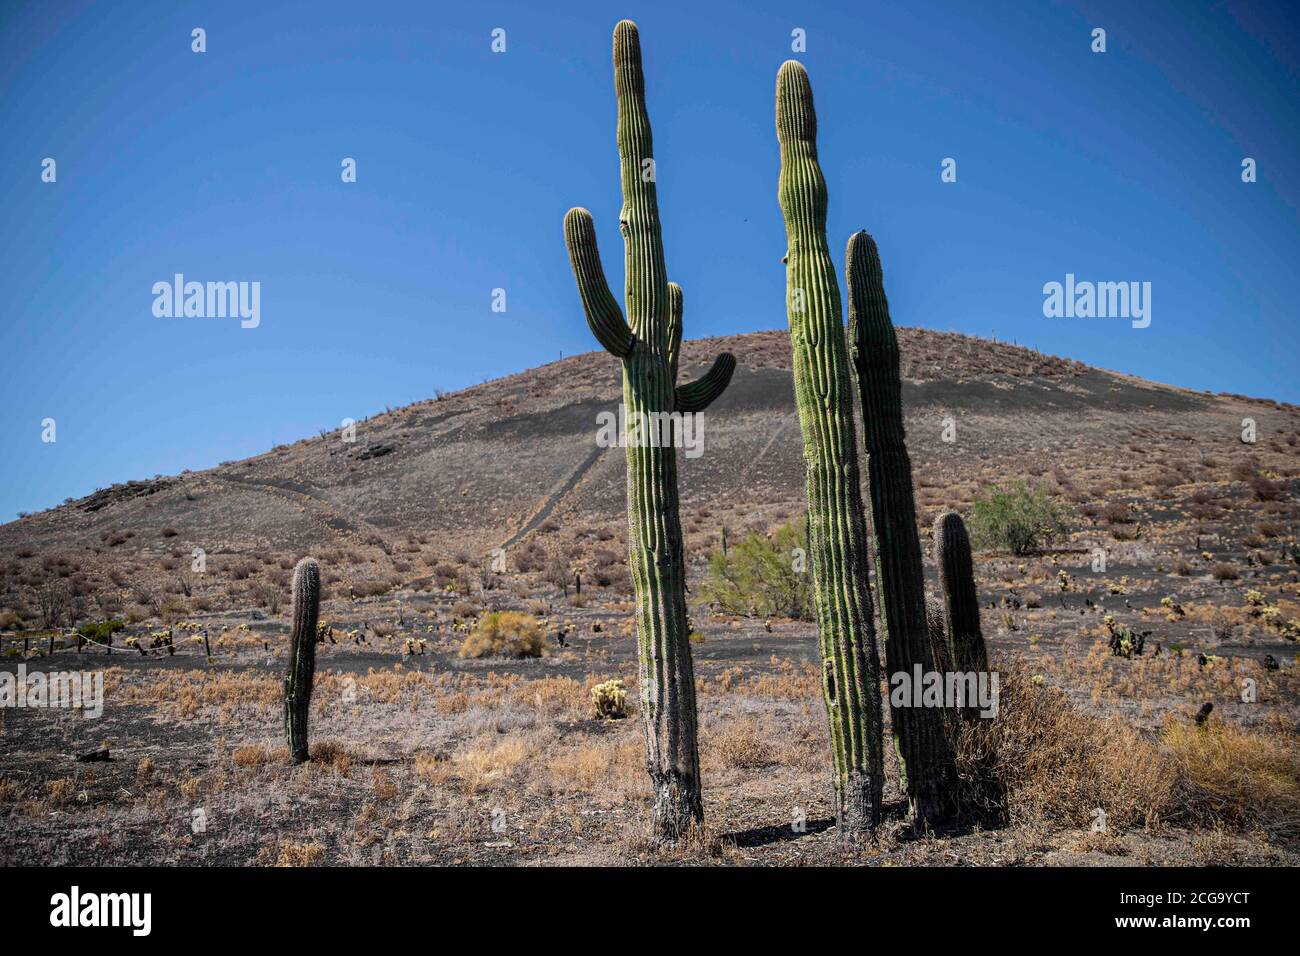 Cactus gigante mexicano, Pachycereus pringlei, cardón gigante mexicano o cactus elefante, especie de cactus nativa del noroeste de México en los estad Stock Photo